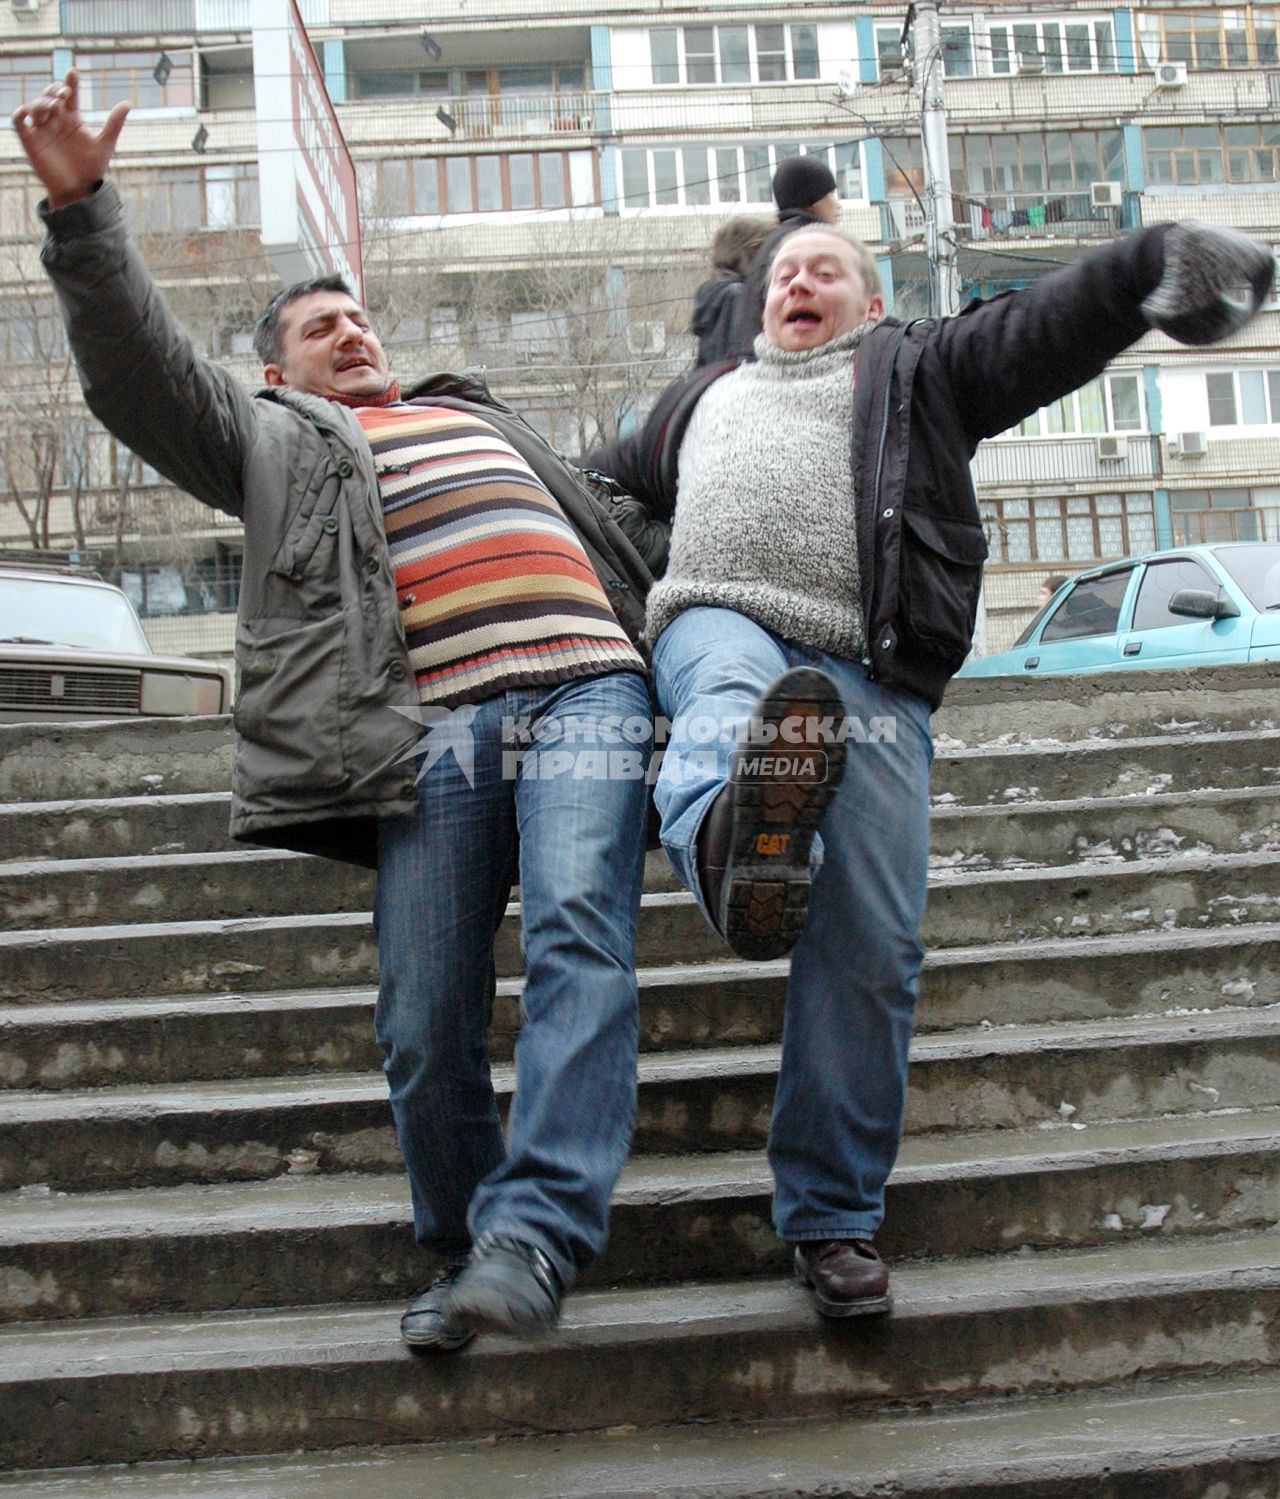 Двое мужчин поскользнулись на скользкой лестнице зимой во время гололеда.